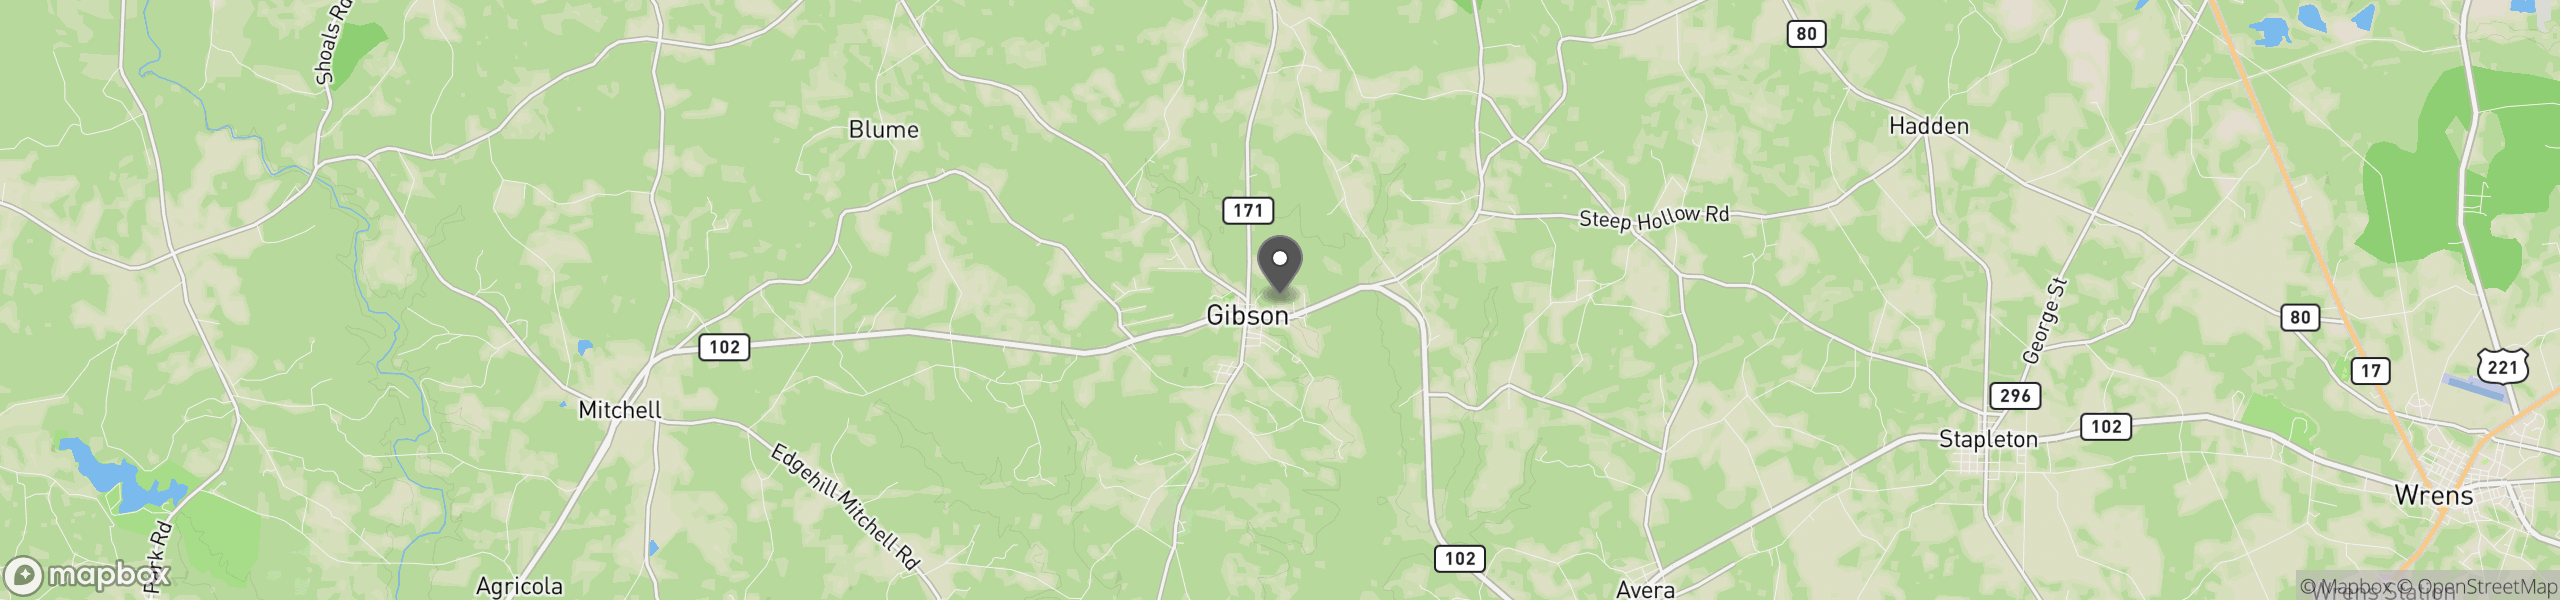 Gibson, GA